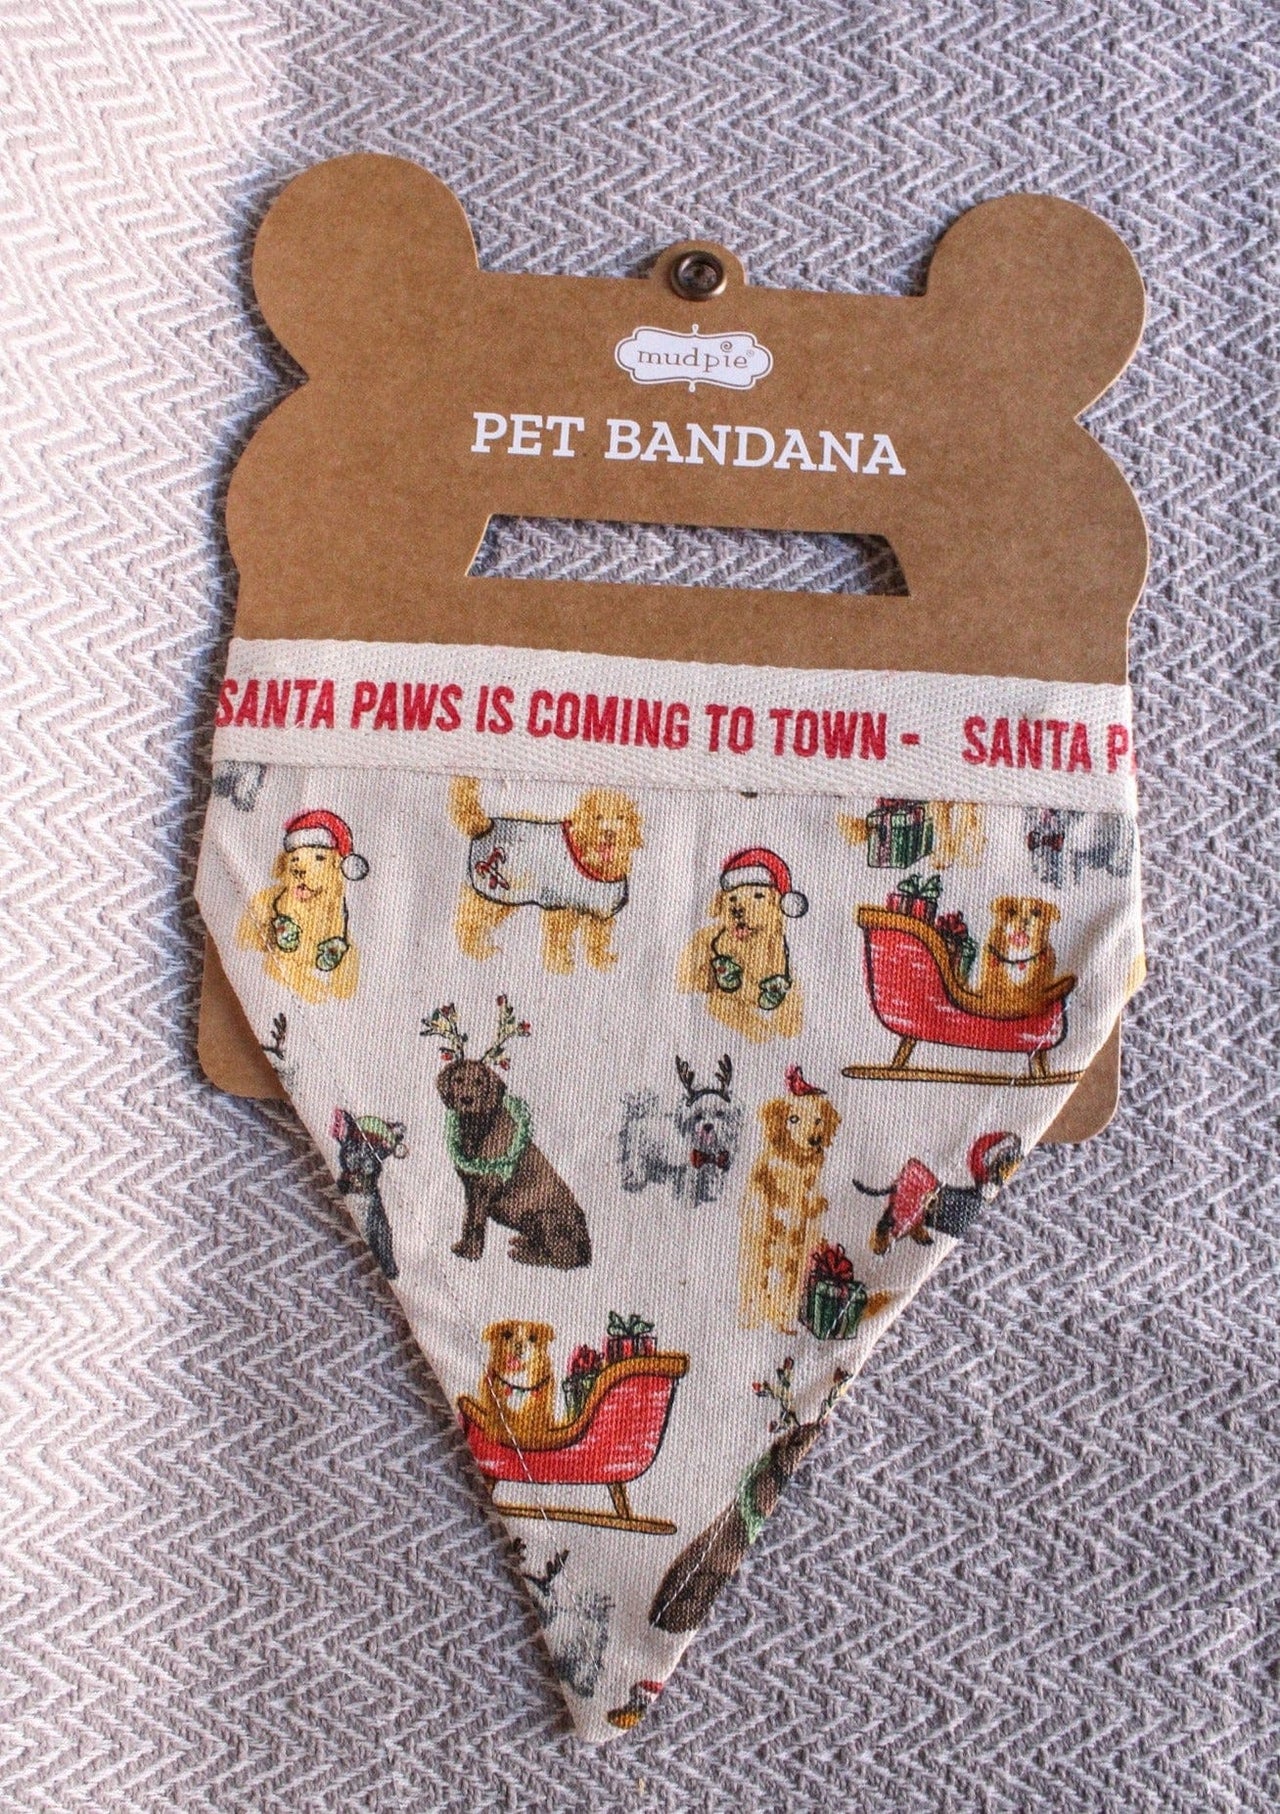 Pet Bandana Holiday Theme by Mud Pie Mud Pie Pet